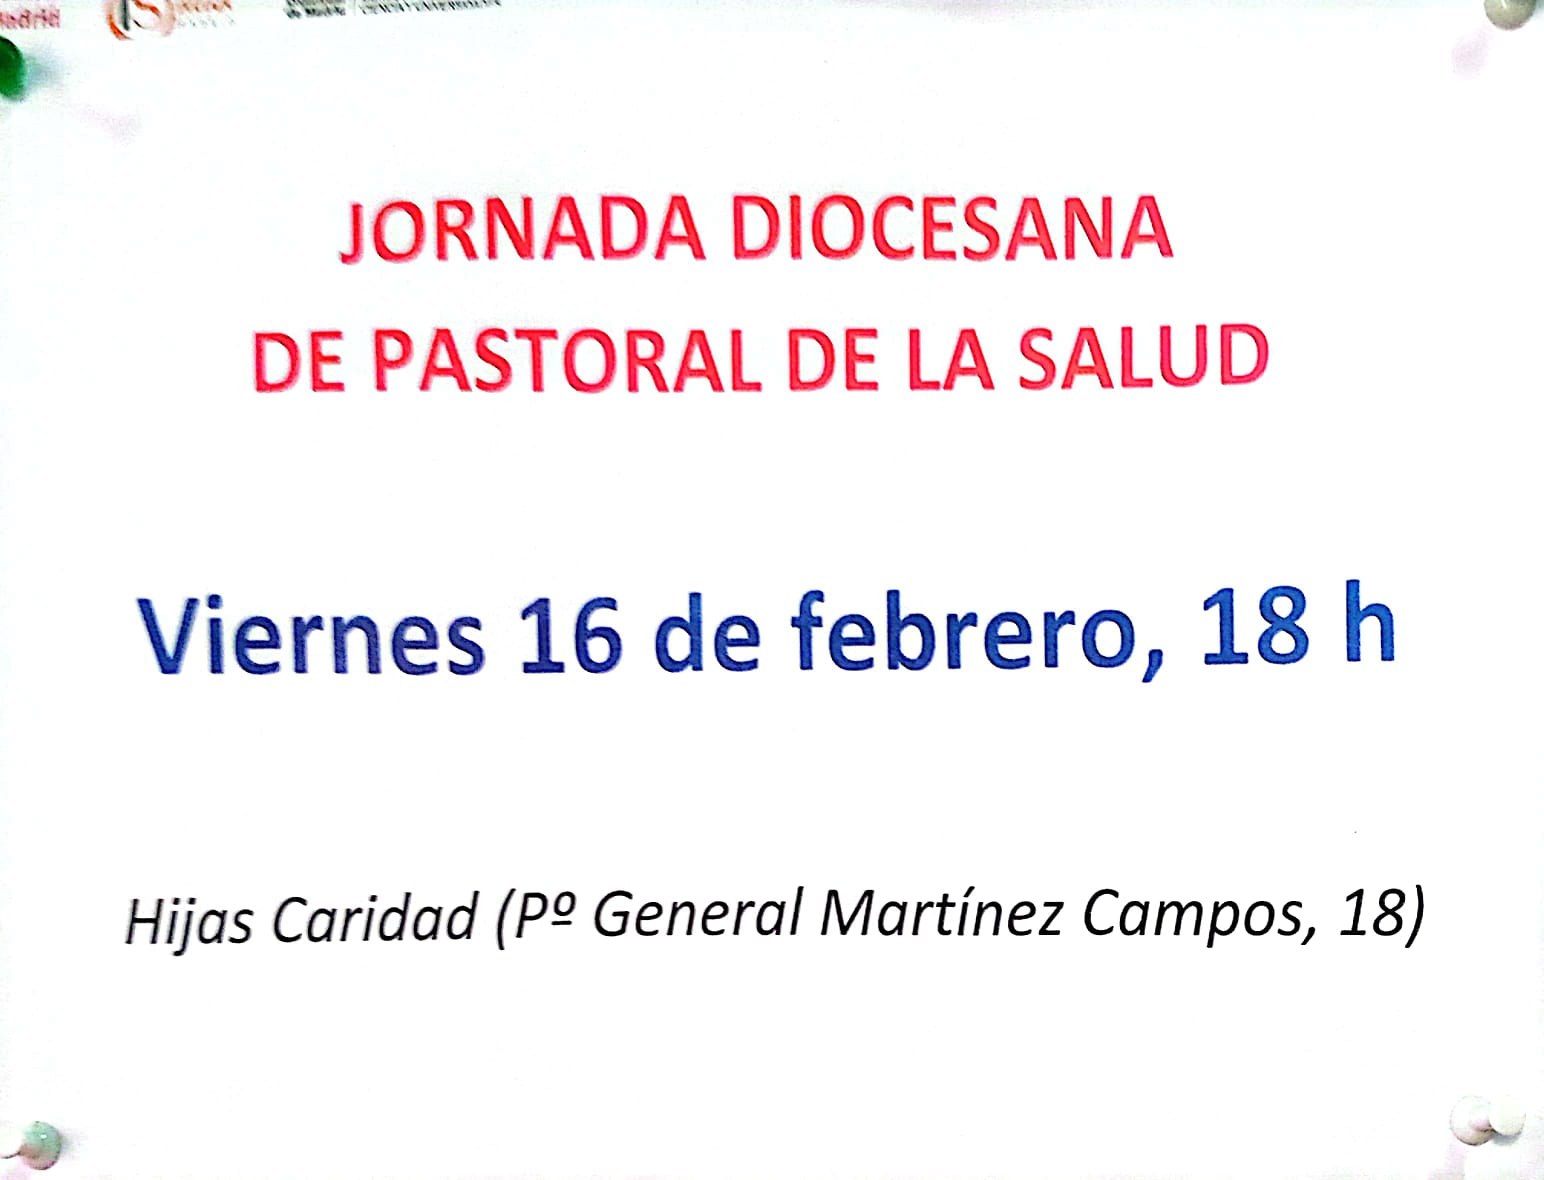 jornada-diocesana-pastoral-de-la-salud@pmillancayetano